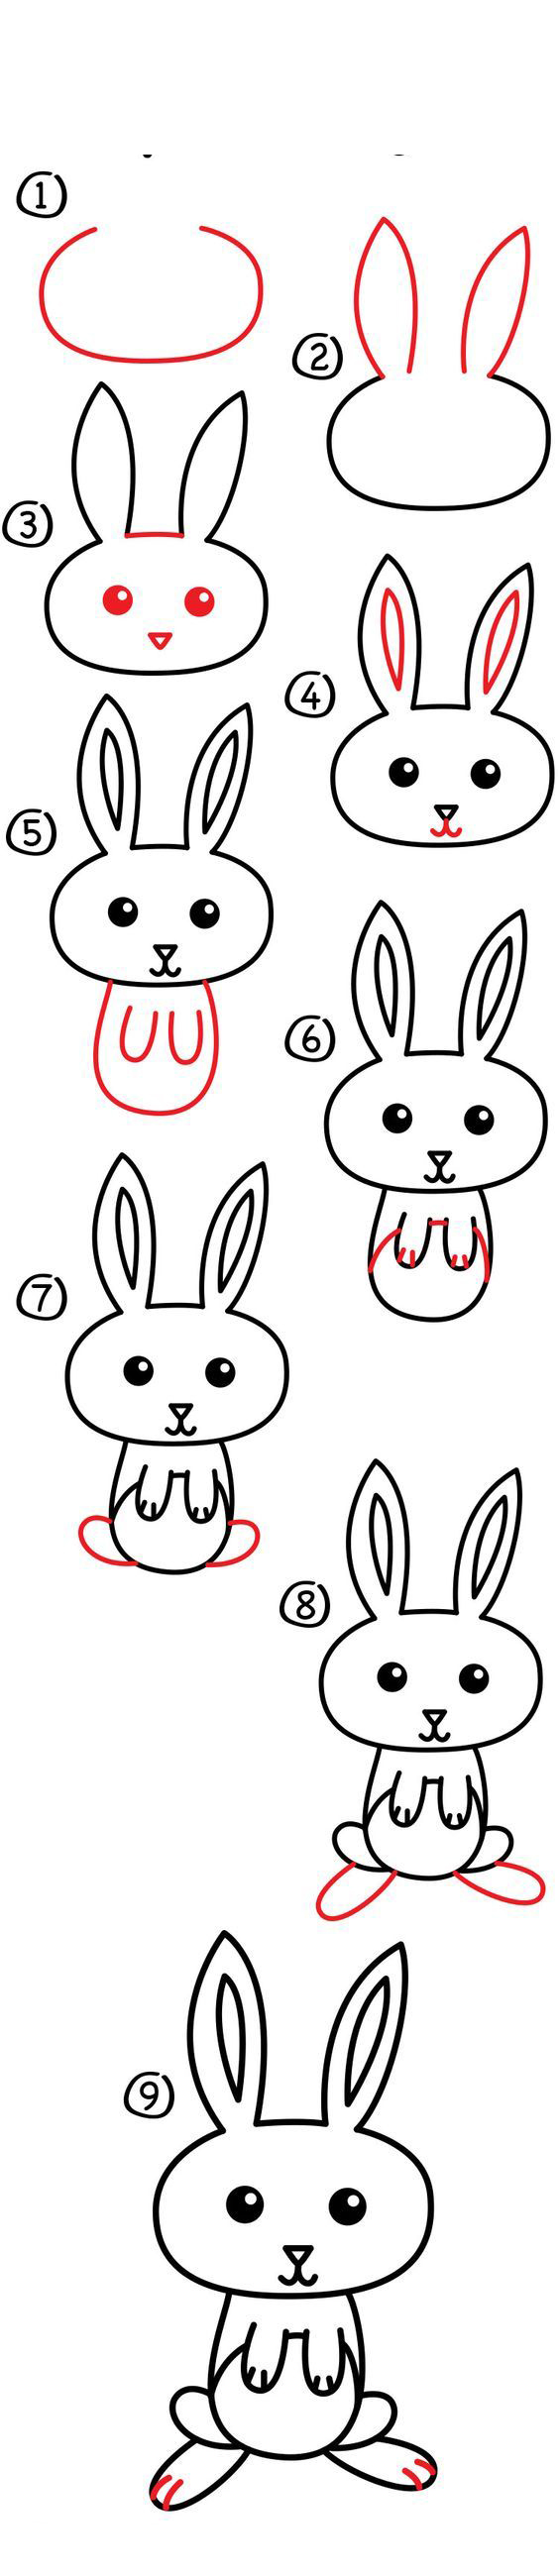 الرسم للاطفال كيفية رسم أرنب خطوة بخطوة بسهولة تامة تعلم الرسم